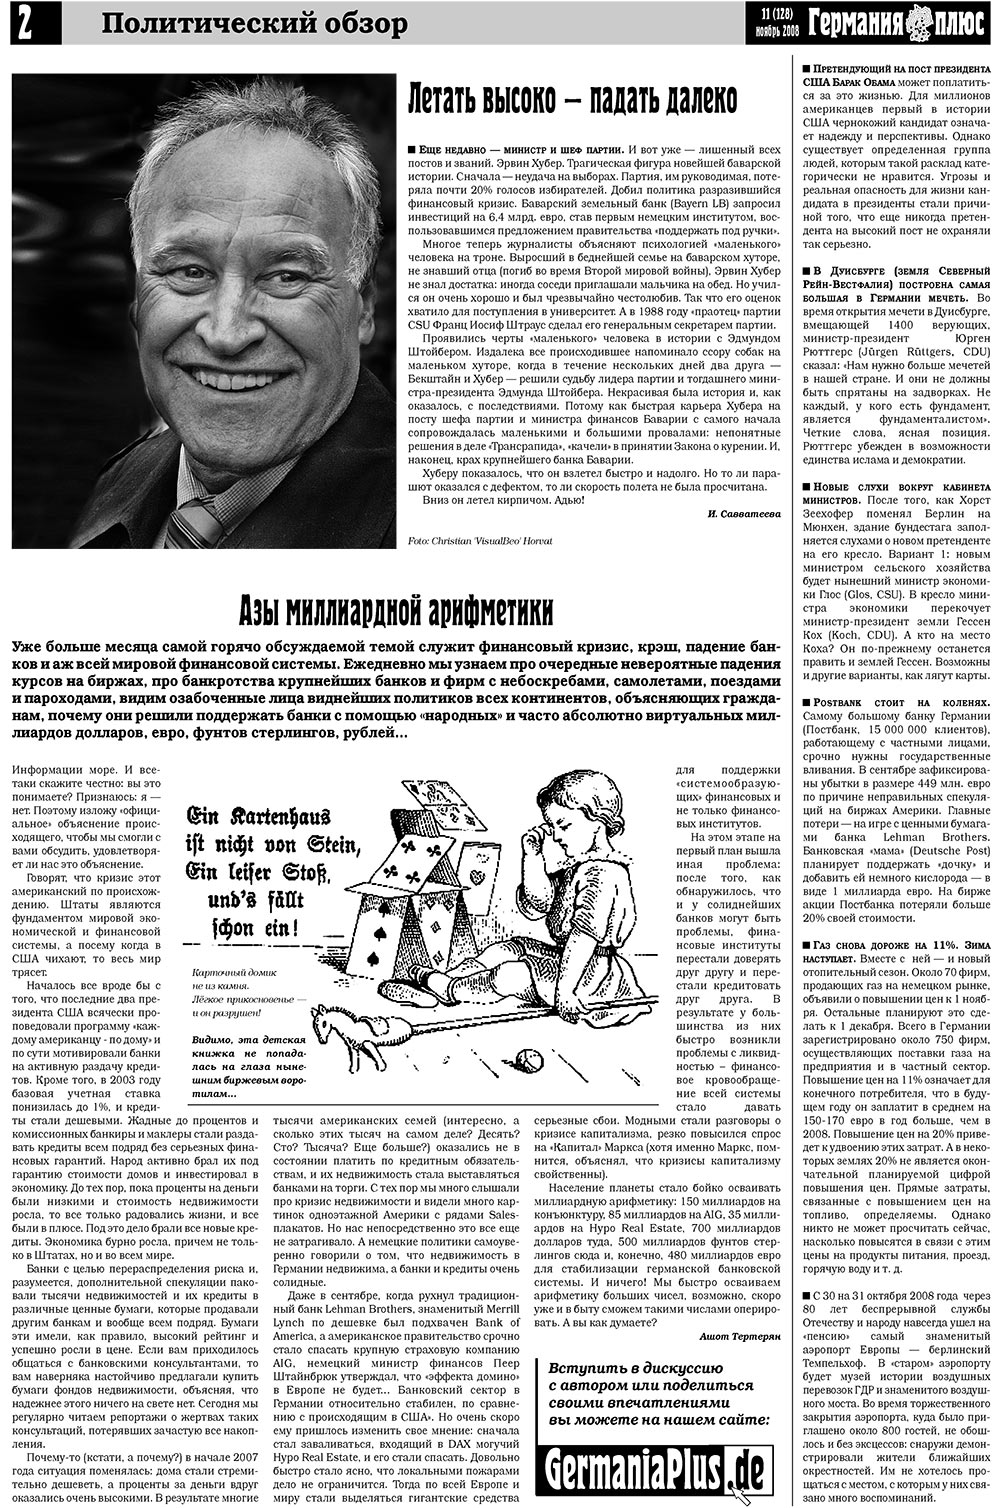 Германия плюс (газета). 2008 год, номер 11, стр. 2